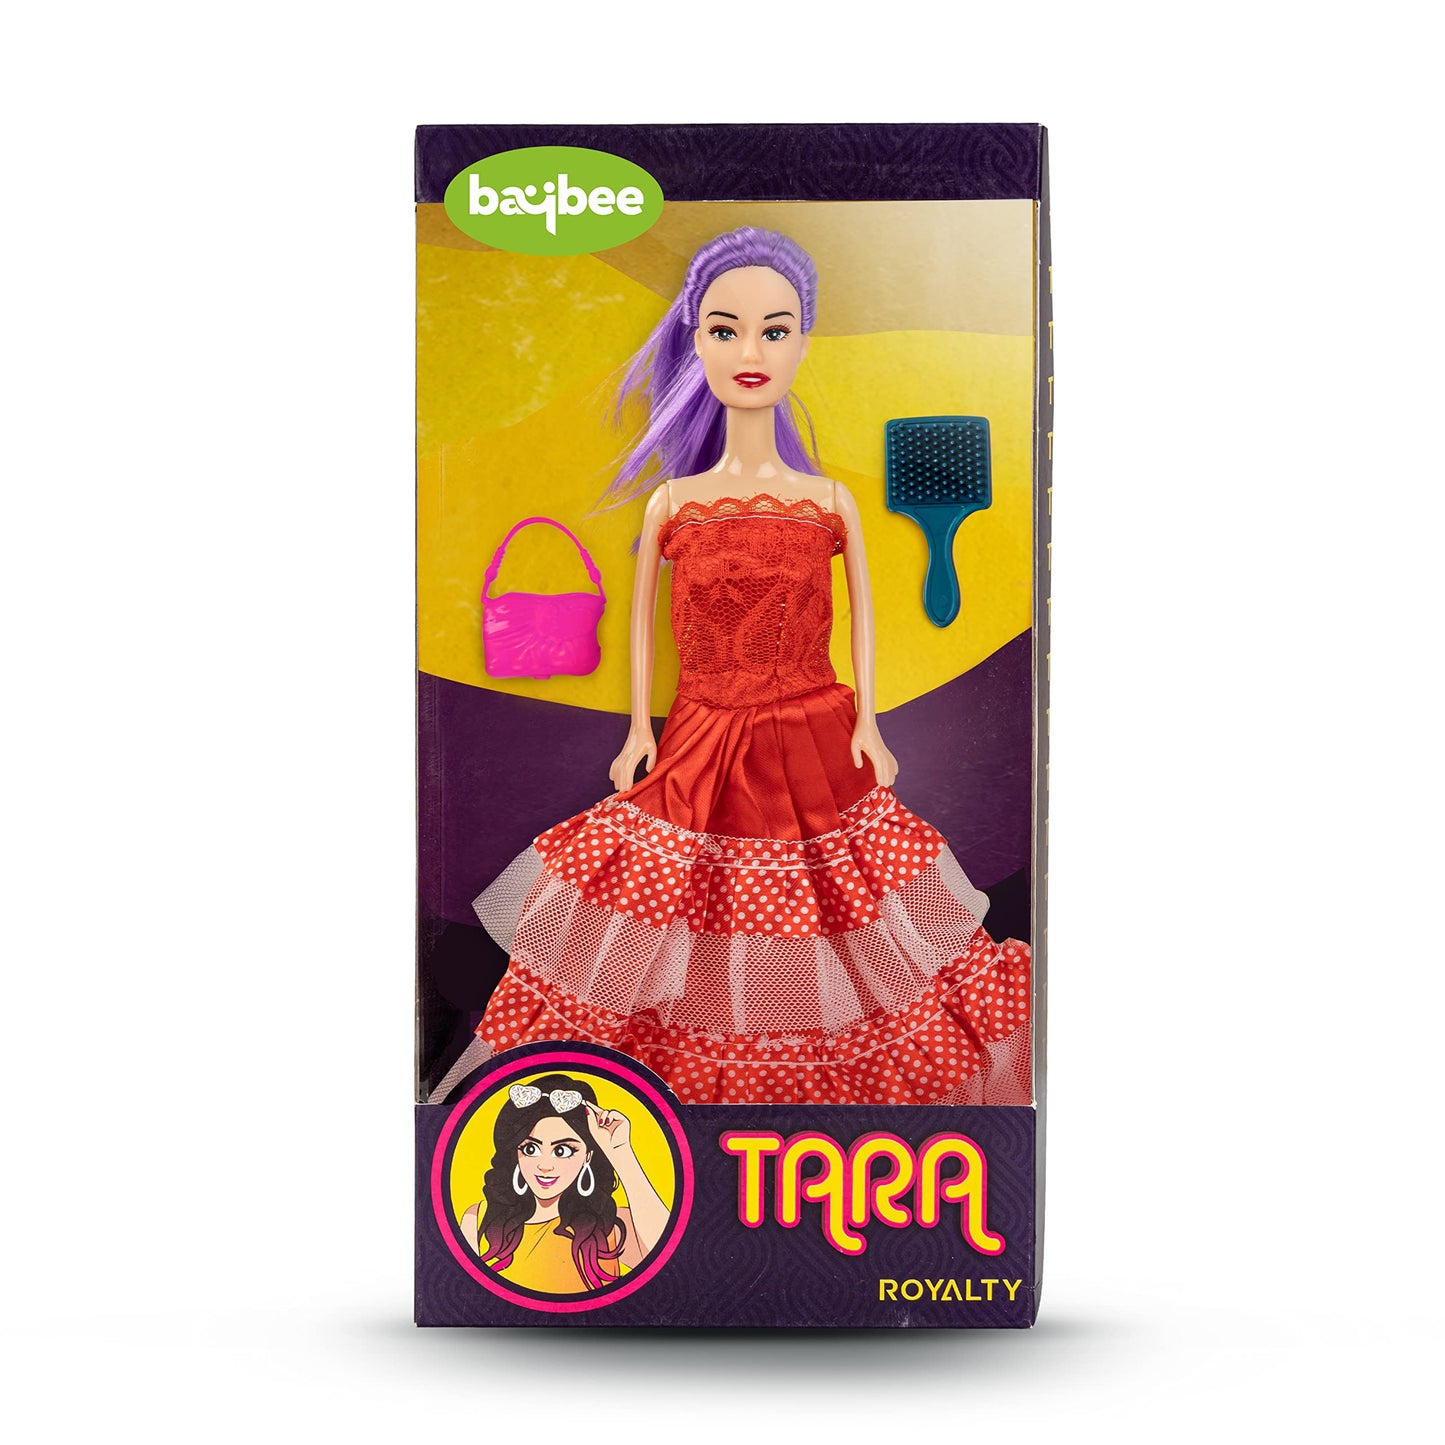 Shree Plastic Princess Doll With Makeup Set at Rs 250/set in Chennai